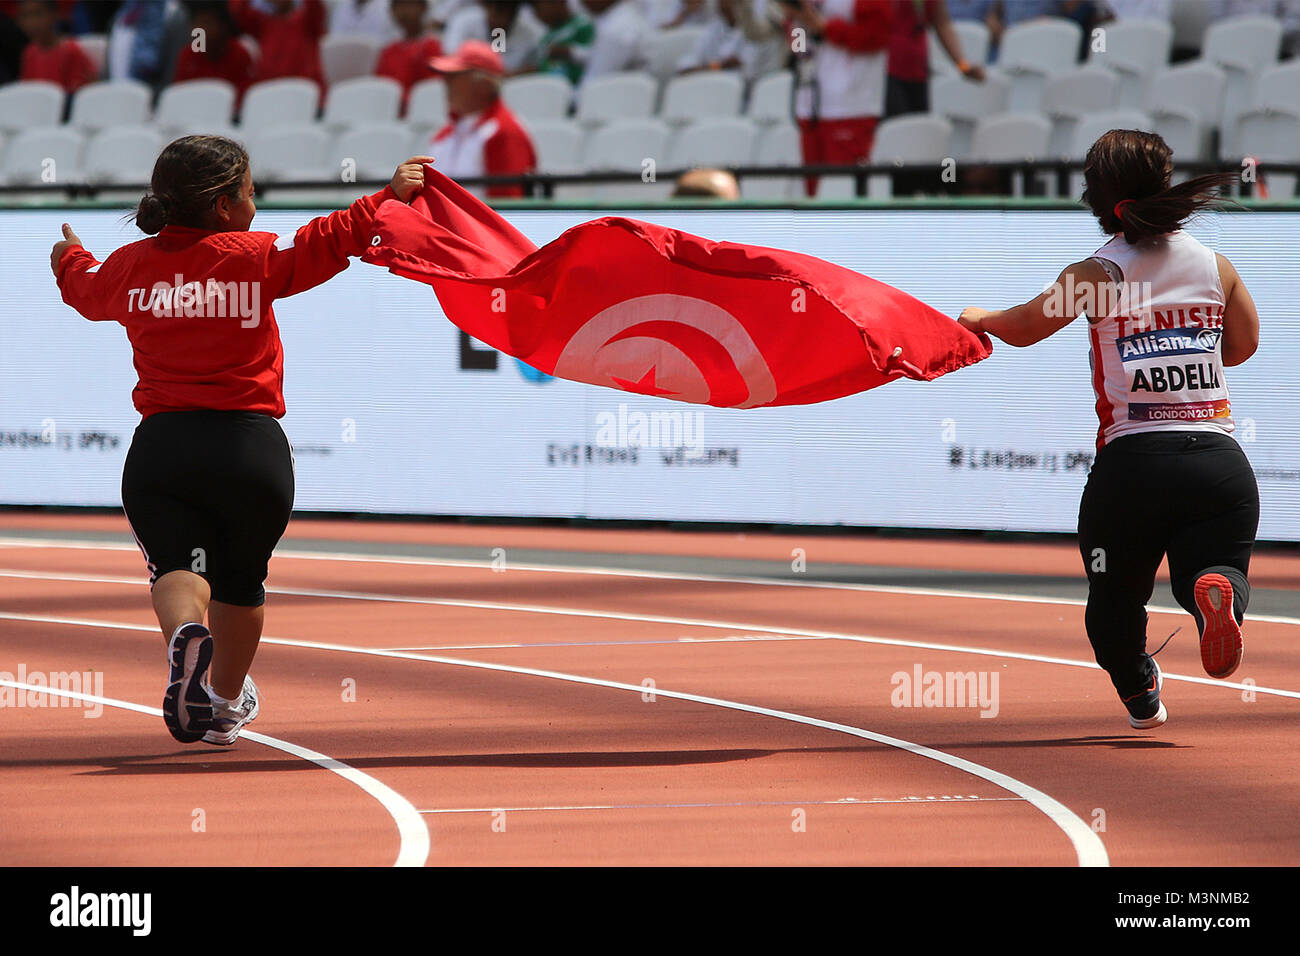 Raja ABDELLI Rima & JEBALI Tunisie gagne de l'or en lancer du poids F40 à la finale des Championnats du monde à Londres 2017 Para Banque D'Images